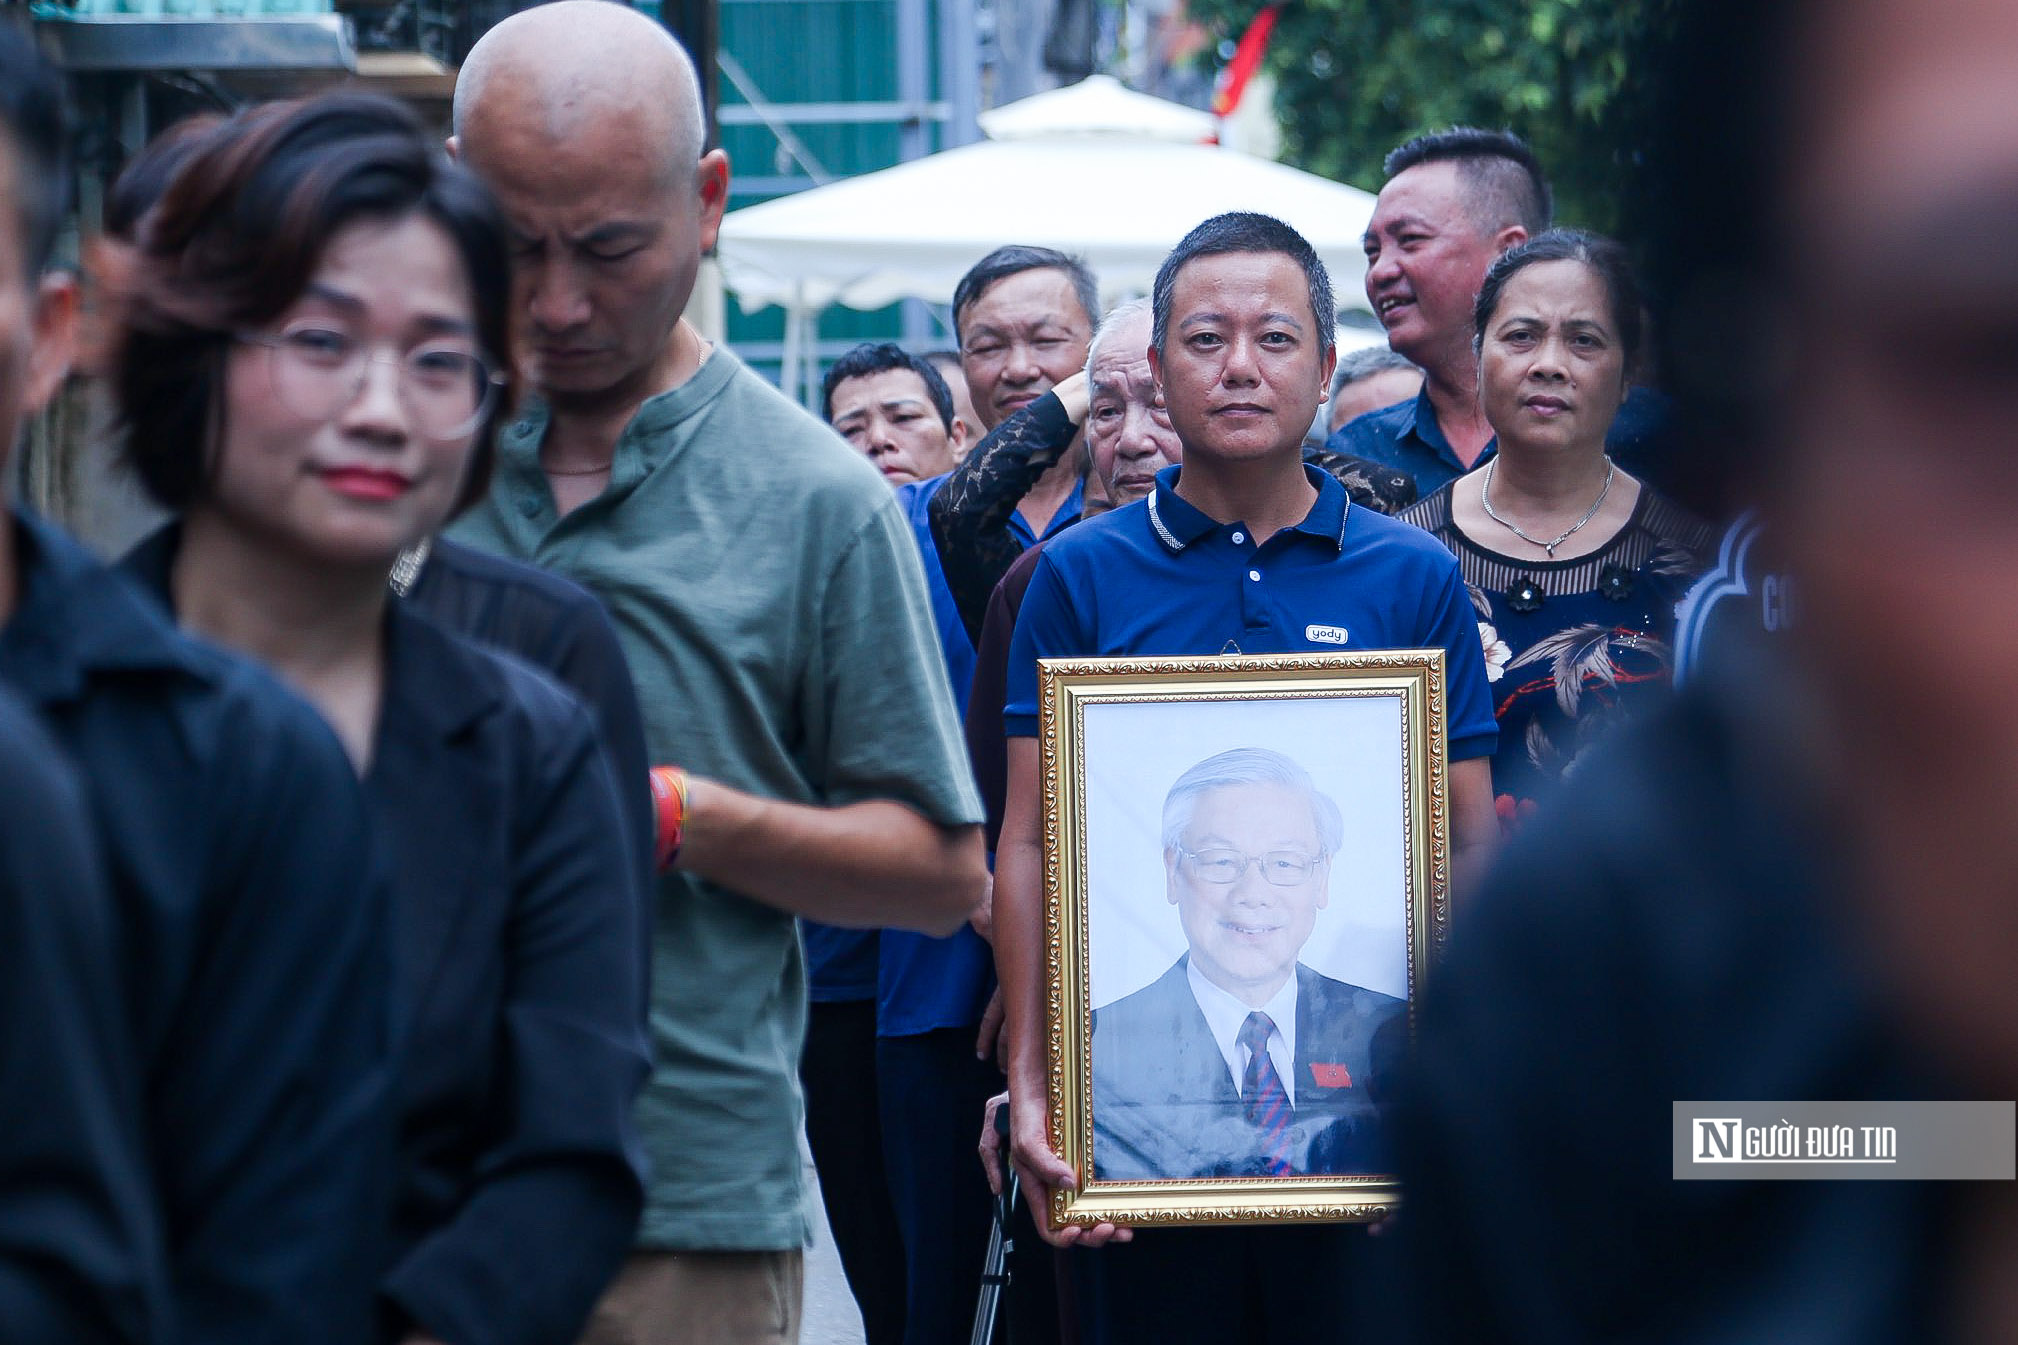 Hàng ngàn người tới viếng Tổng Bí thư Nguyễn Phú Trọng tại quê nhà- Ảnh 5.